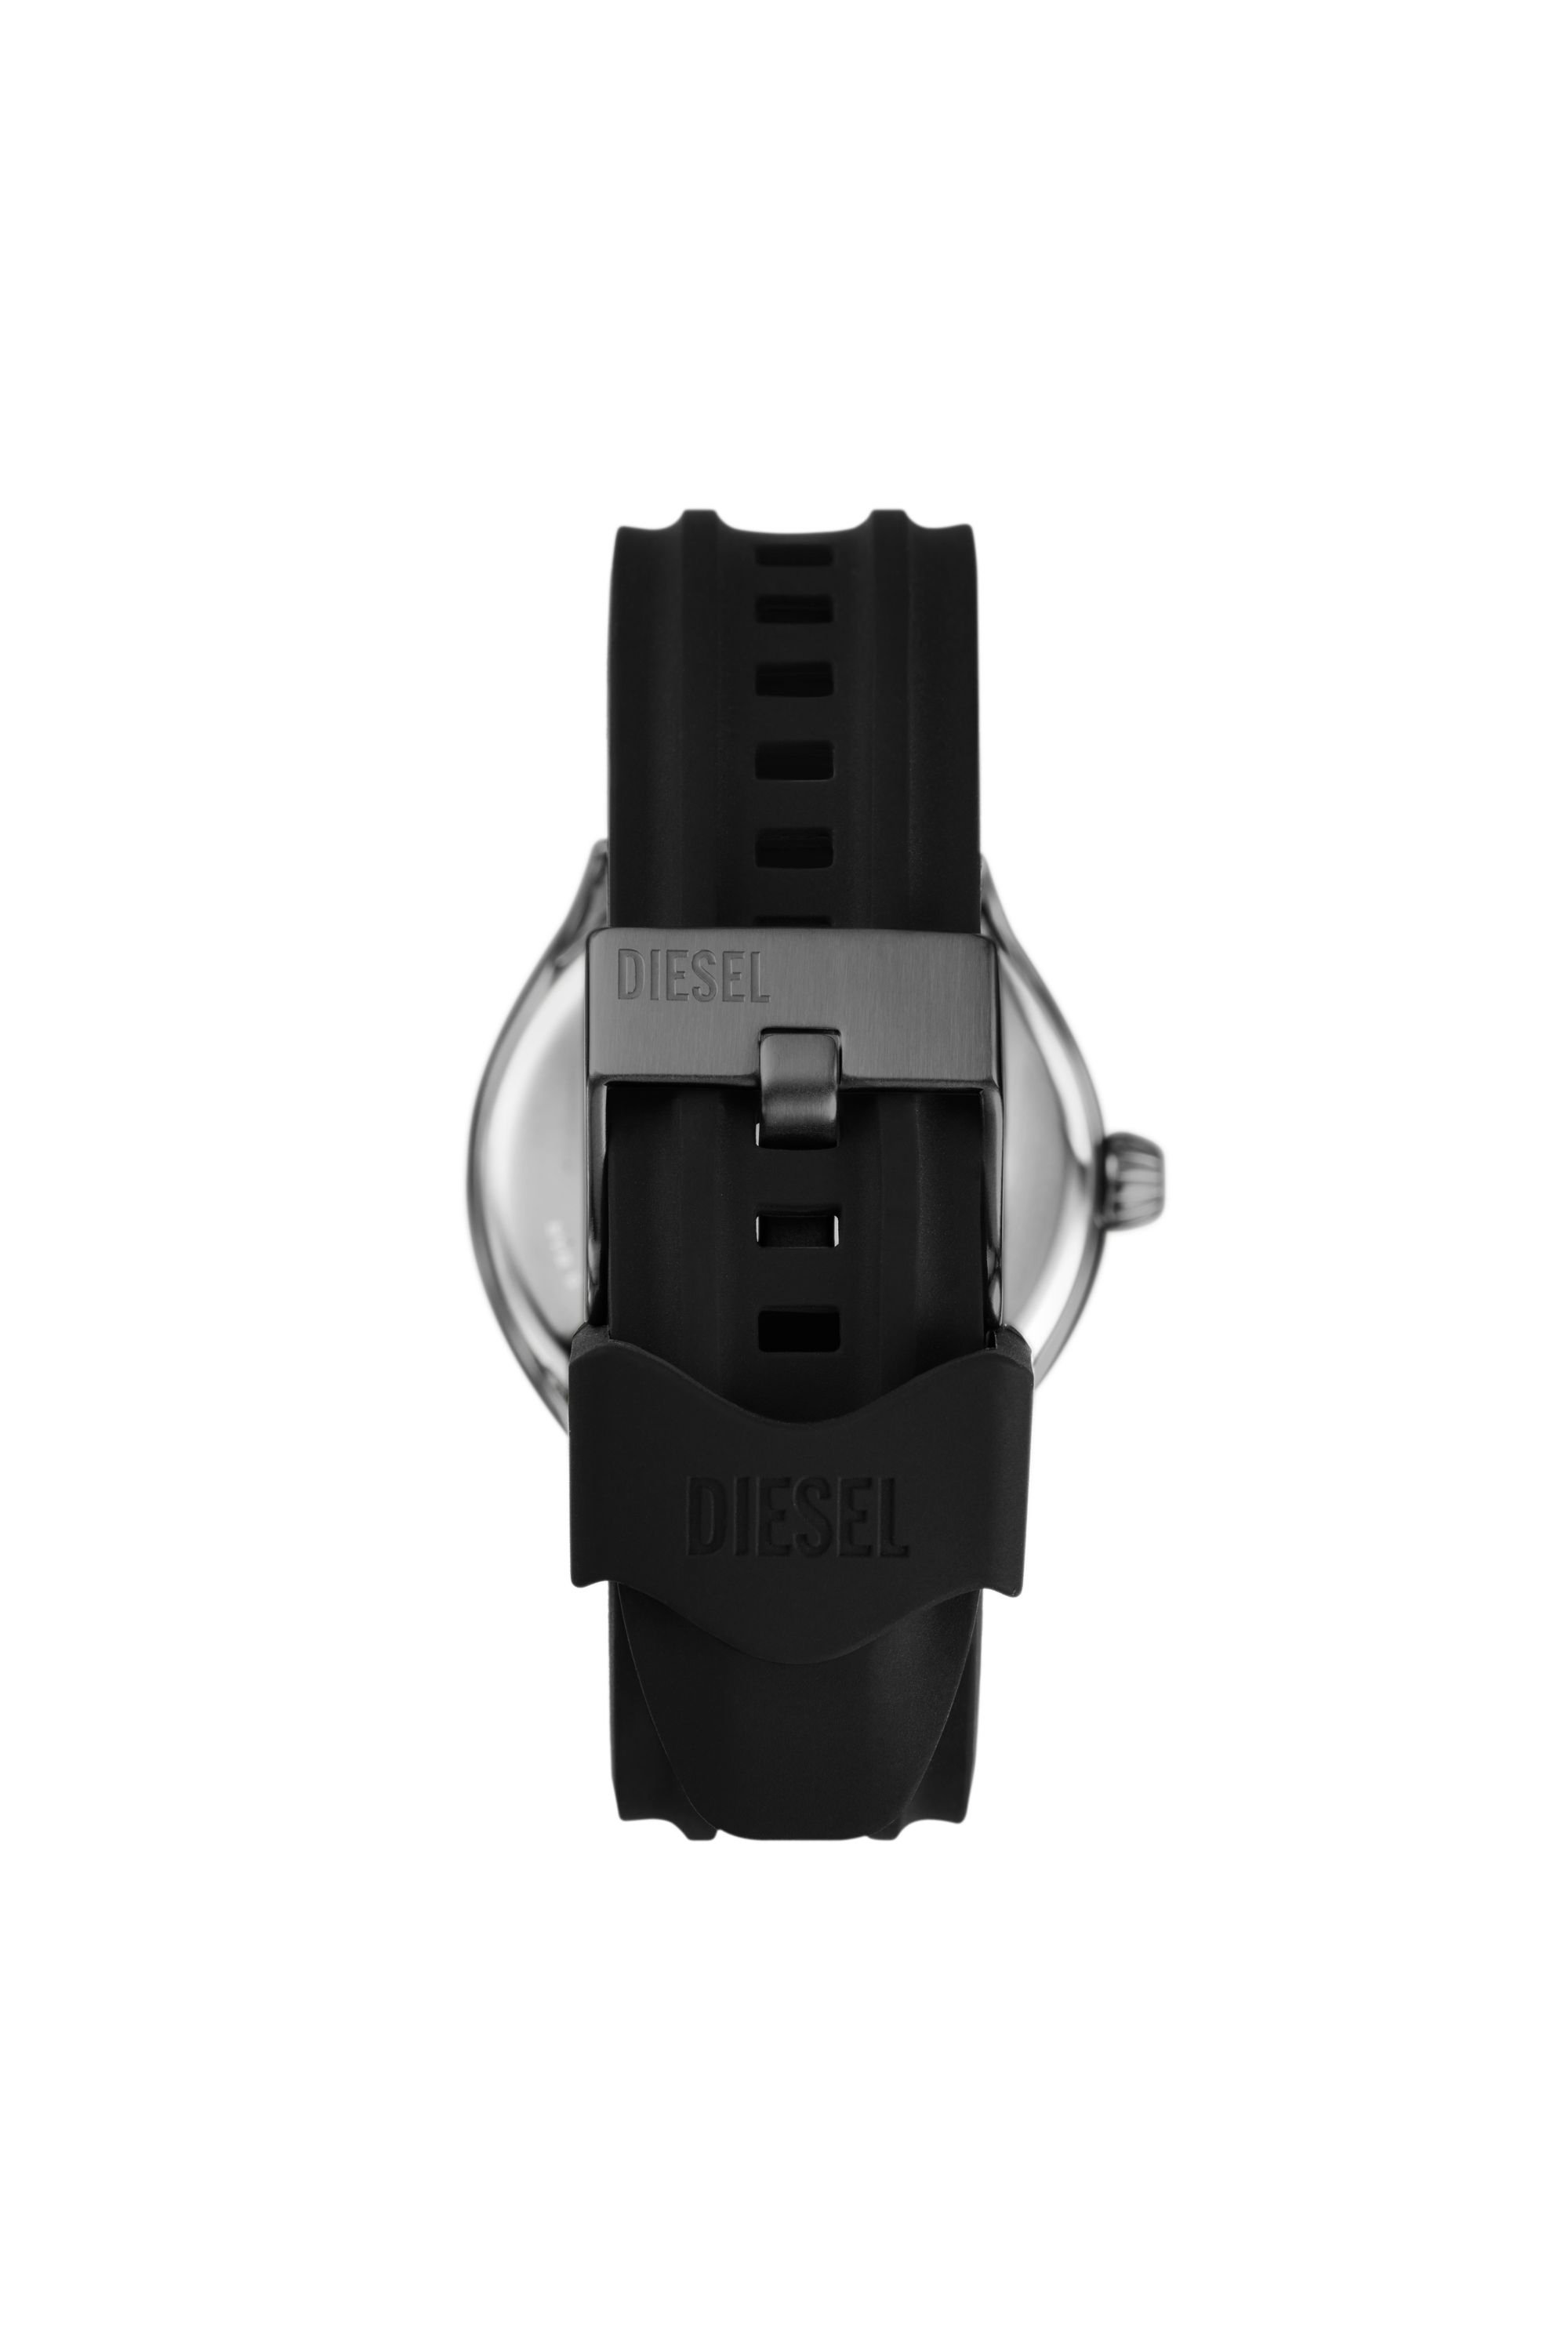 Diesel - DZ2201, Male Streamline three-hand black silicone watch in Black - Image 2